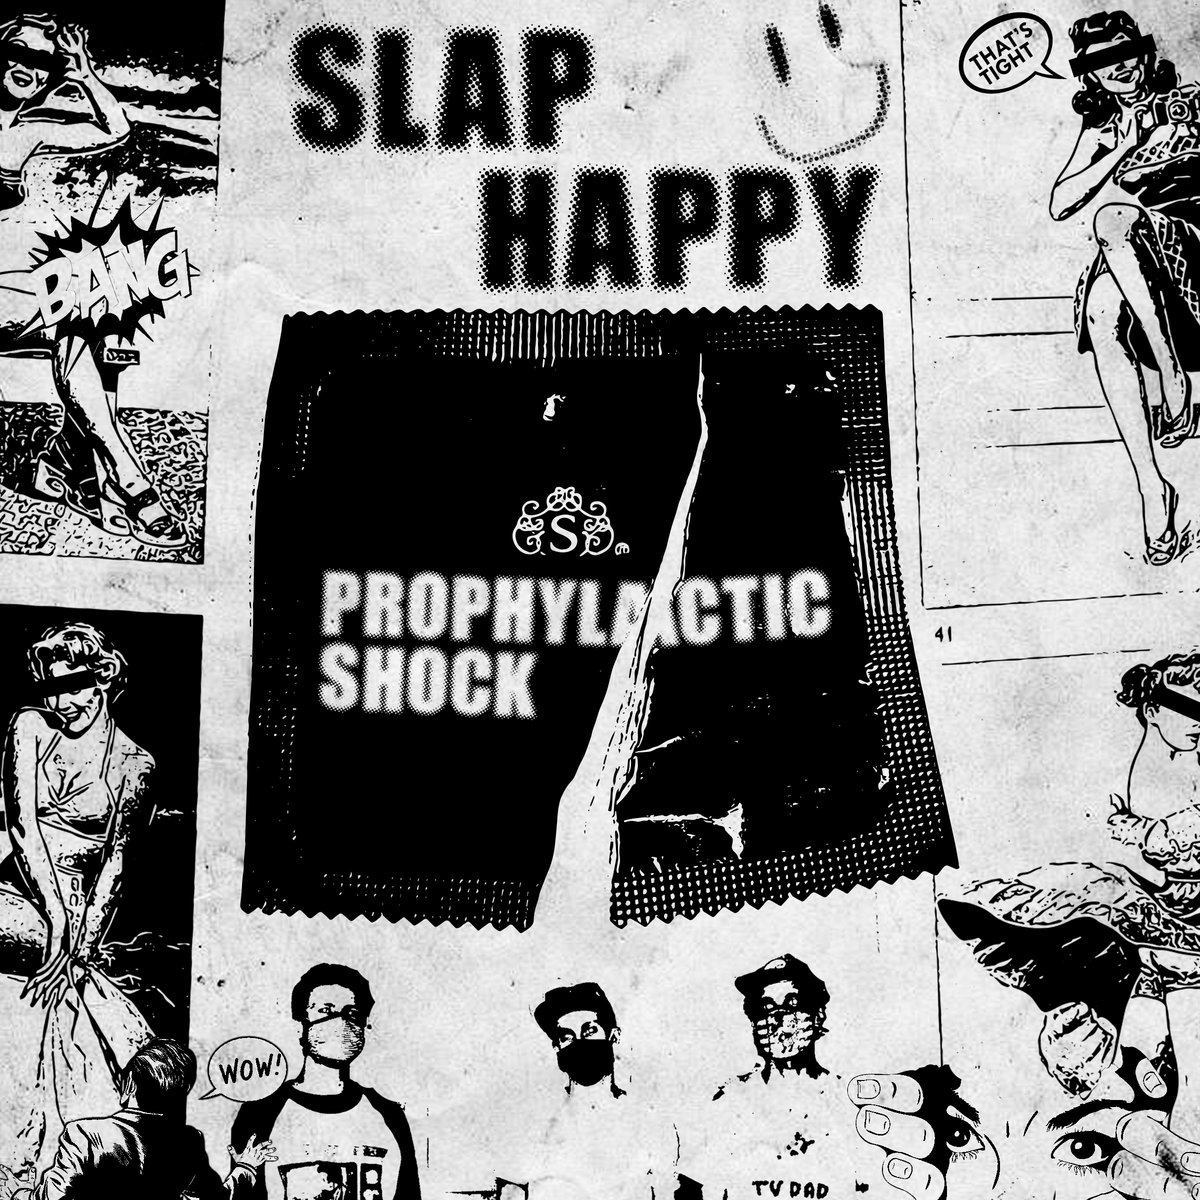 Slap happy